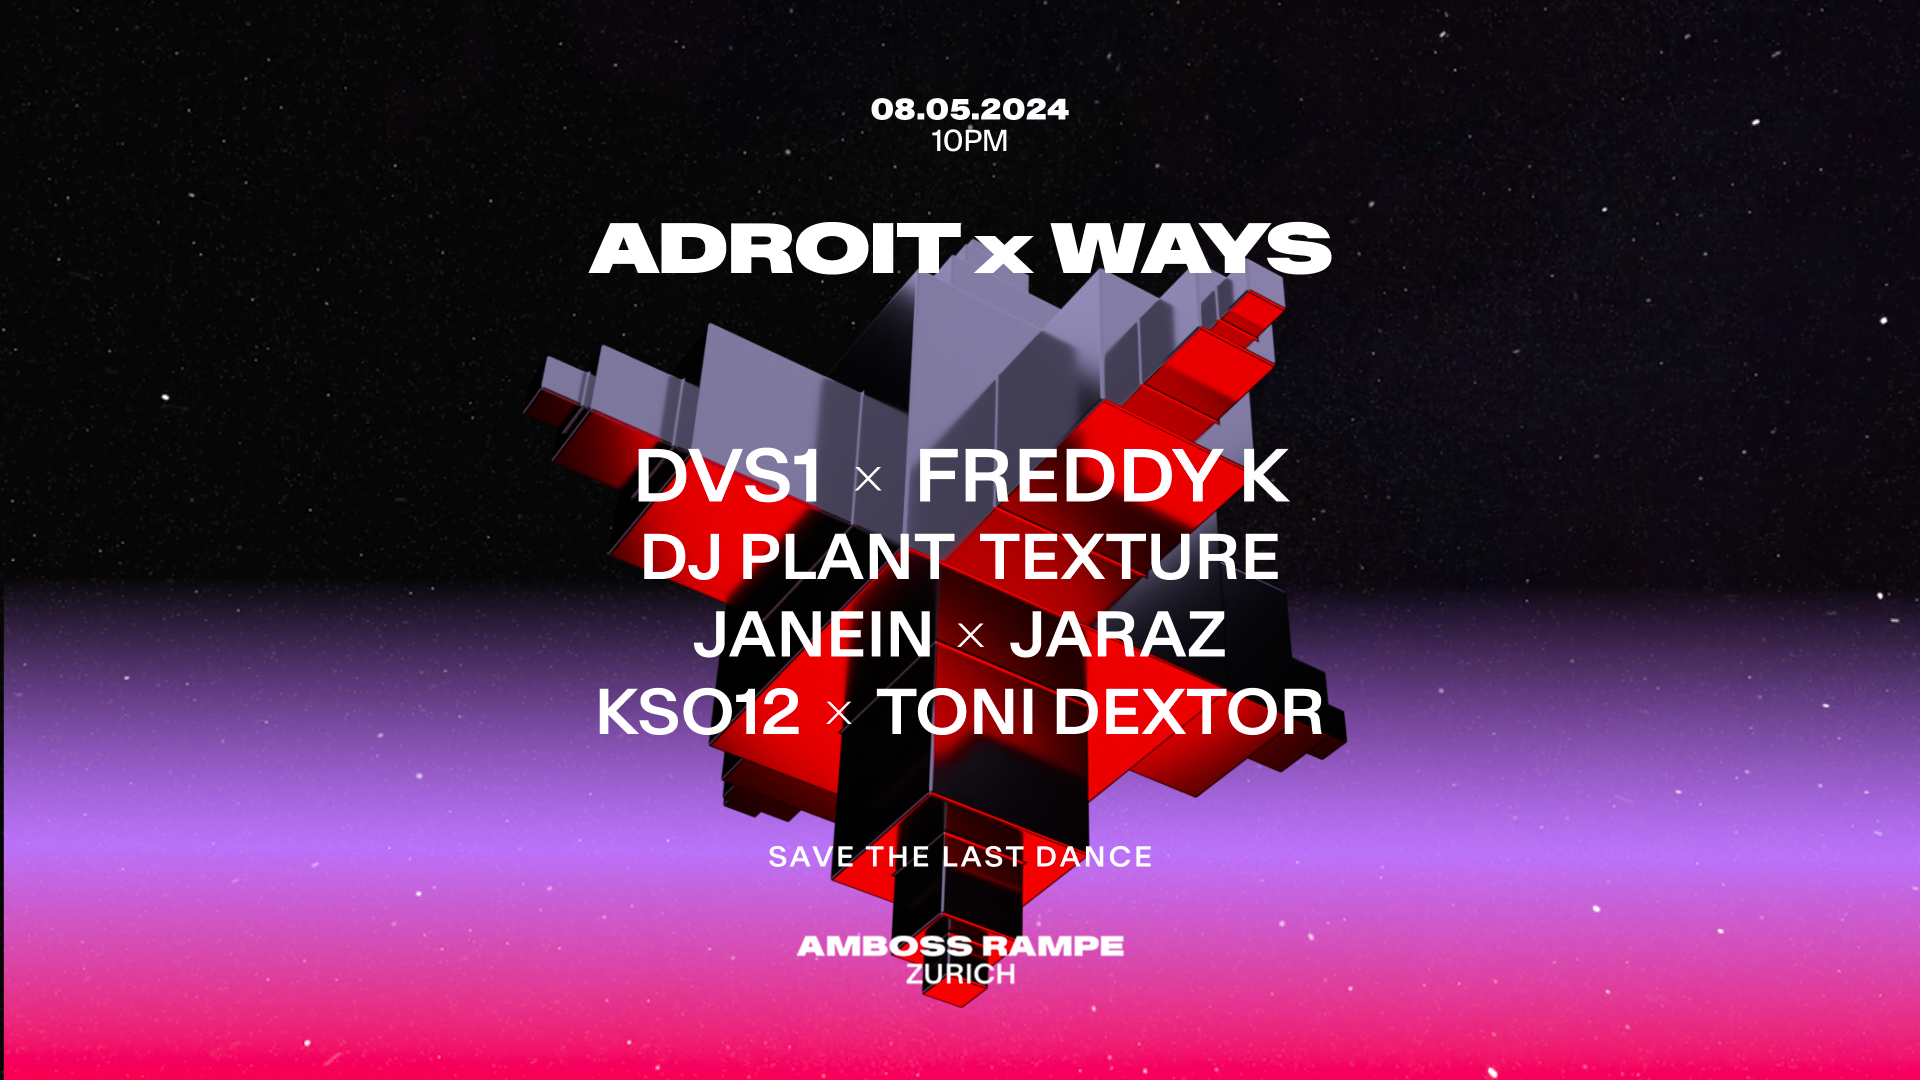 Adroit x Ways with DVS1 & Freddy K - Página frontal